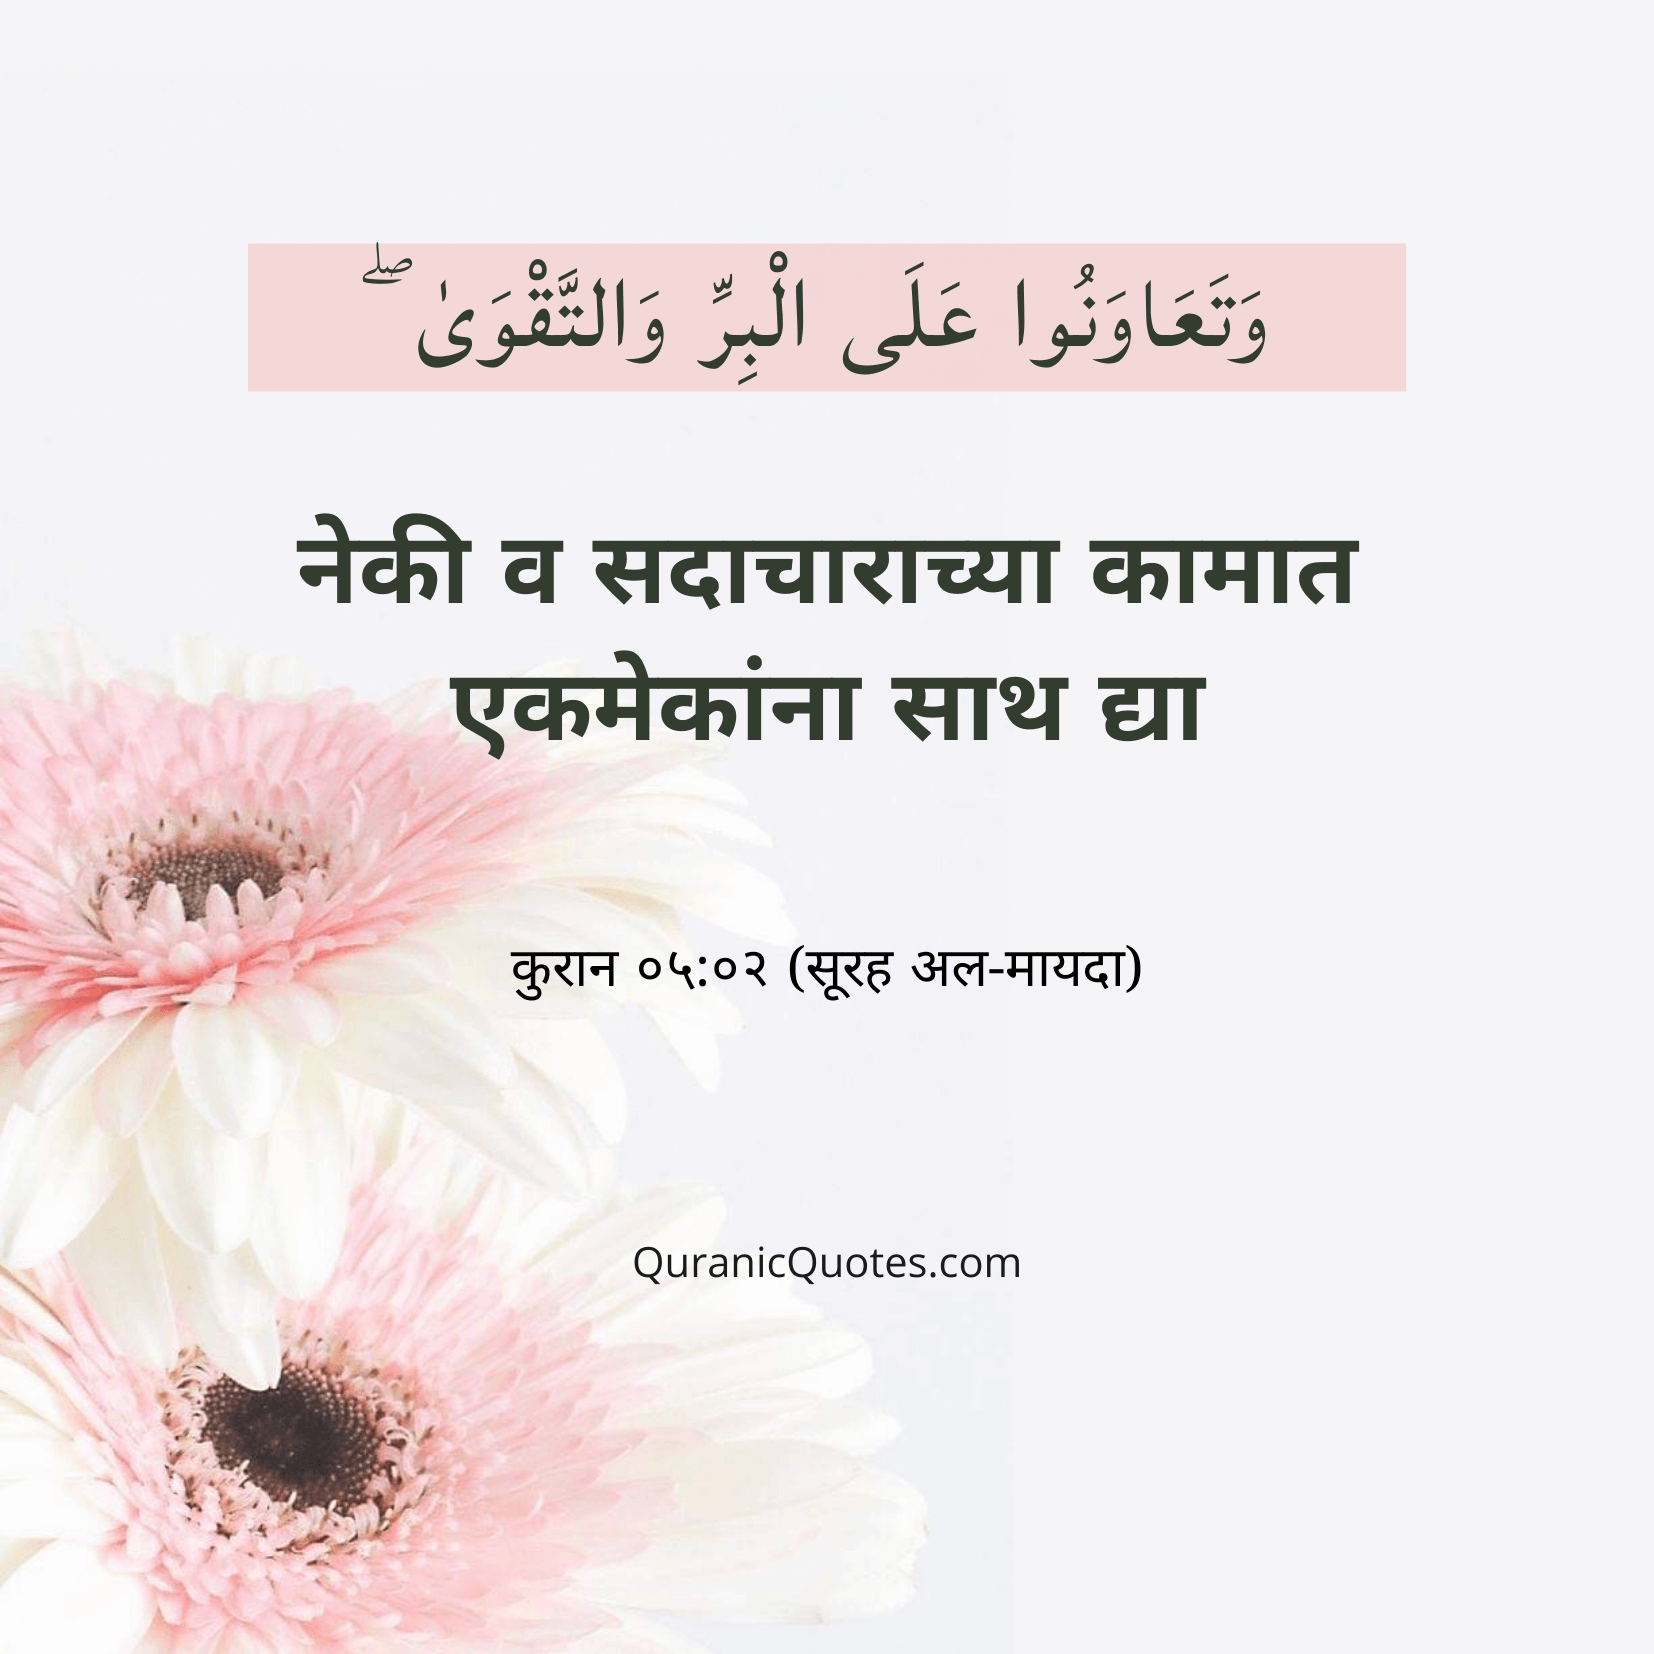 Quranic Quotes Marathi #03